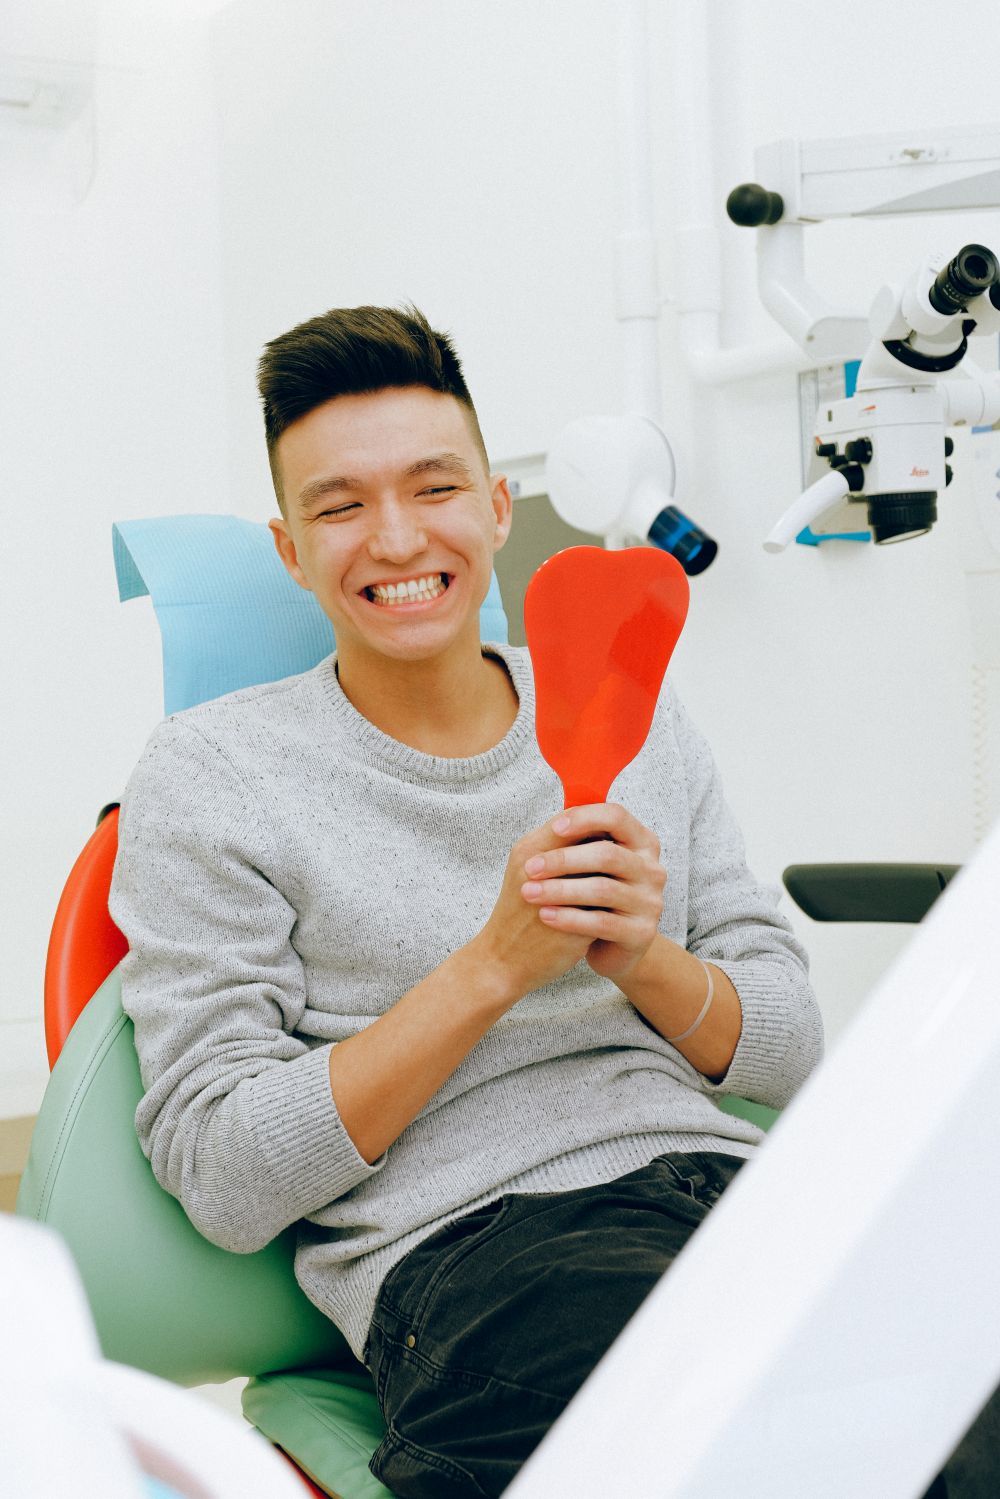 En gjennomgang av tannregulering - hvorfor er oral helse viktig å tenke på?